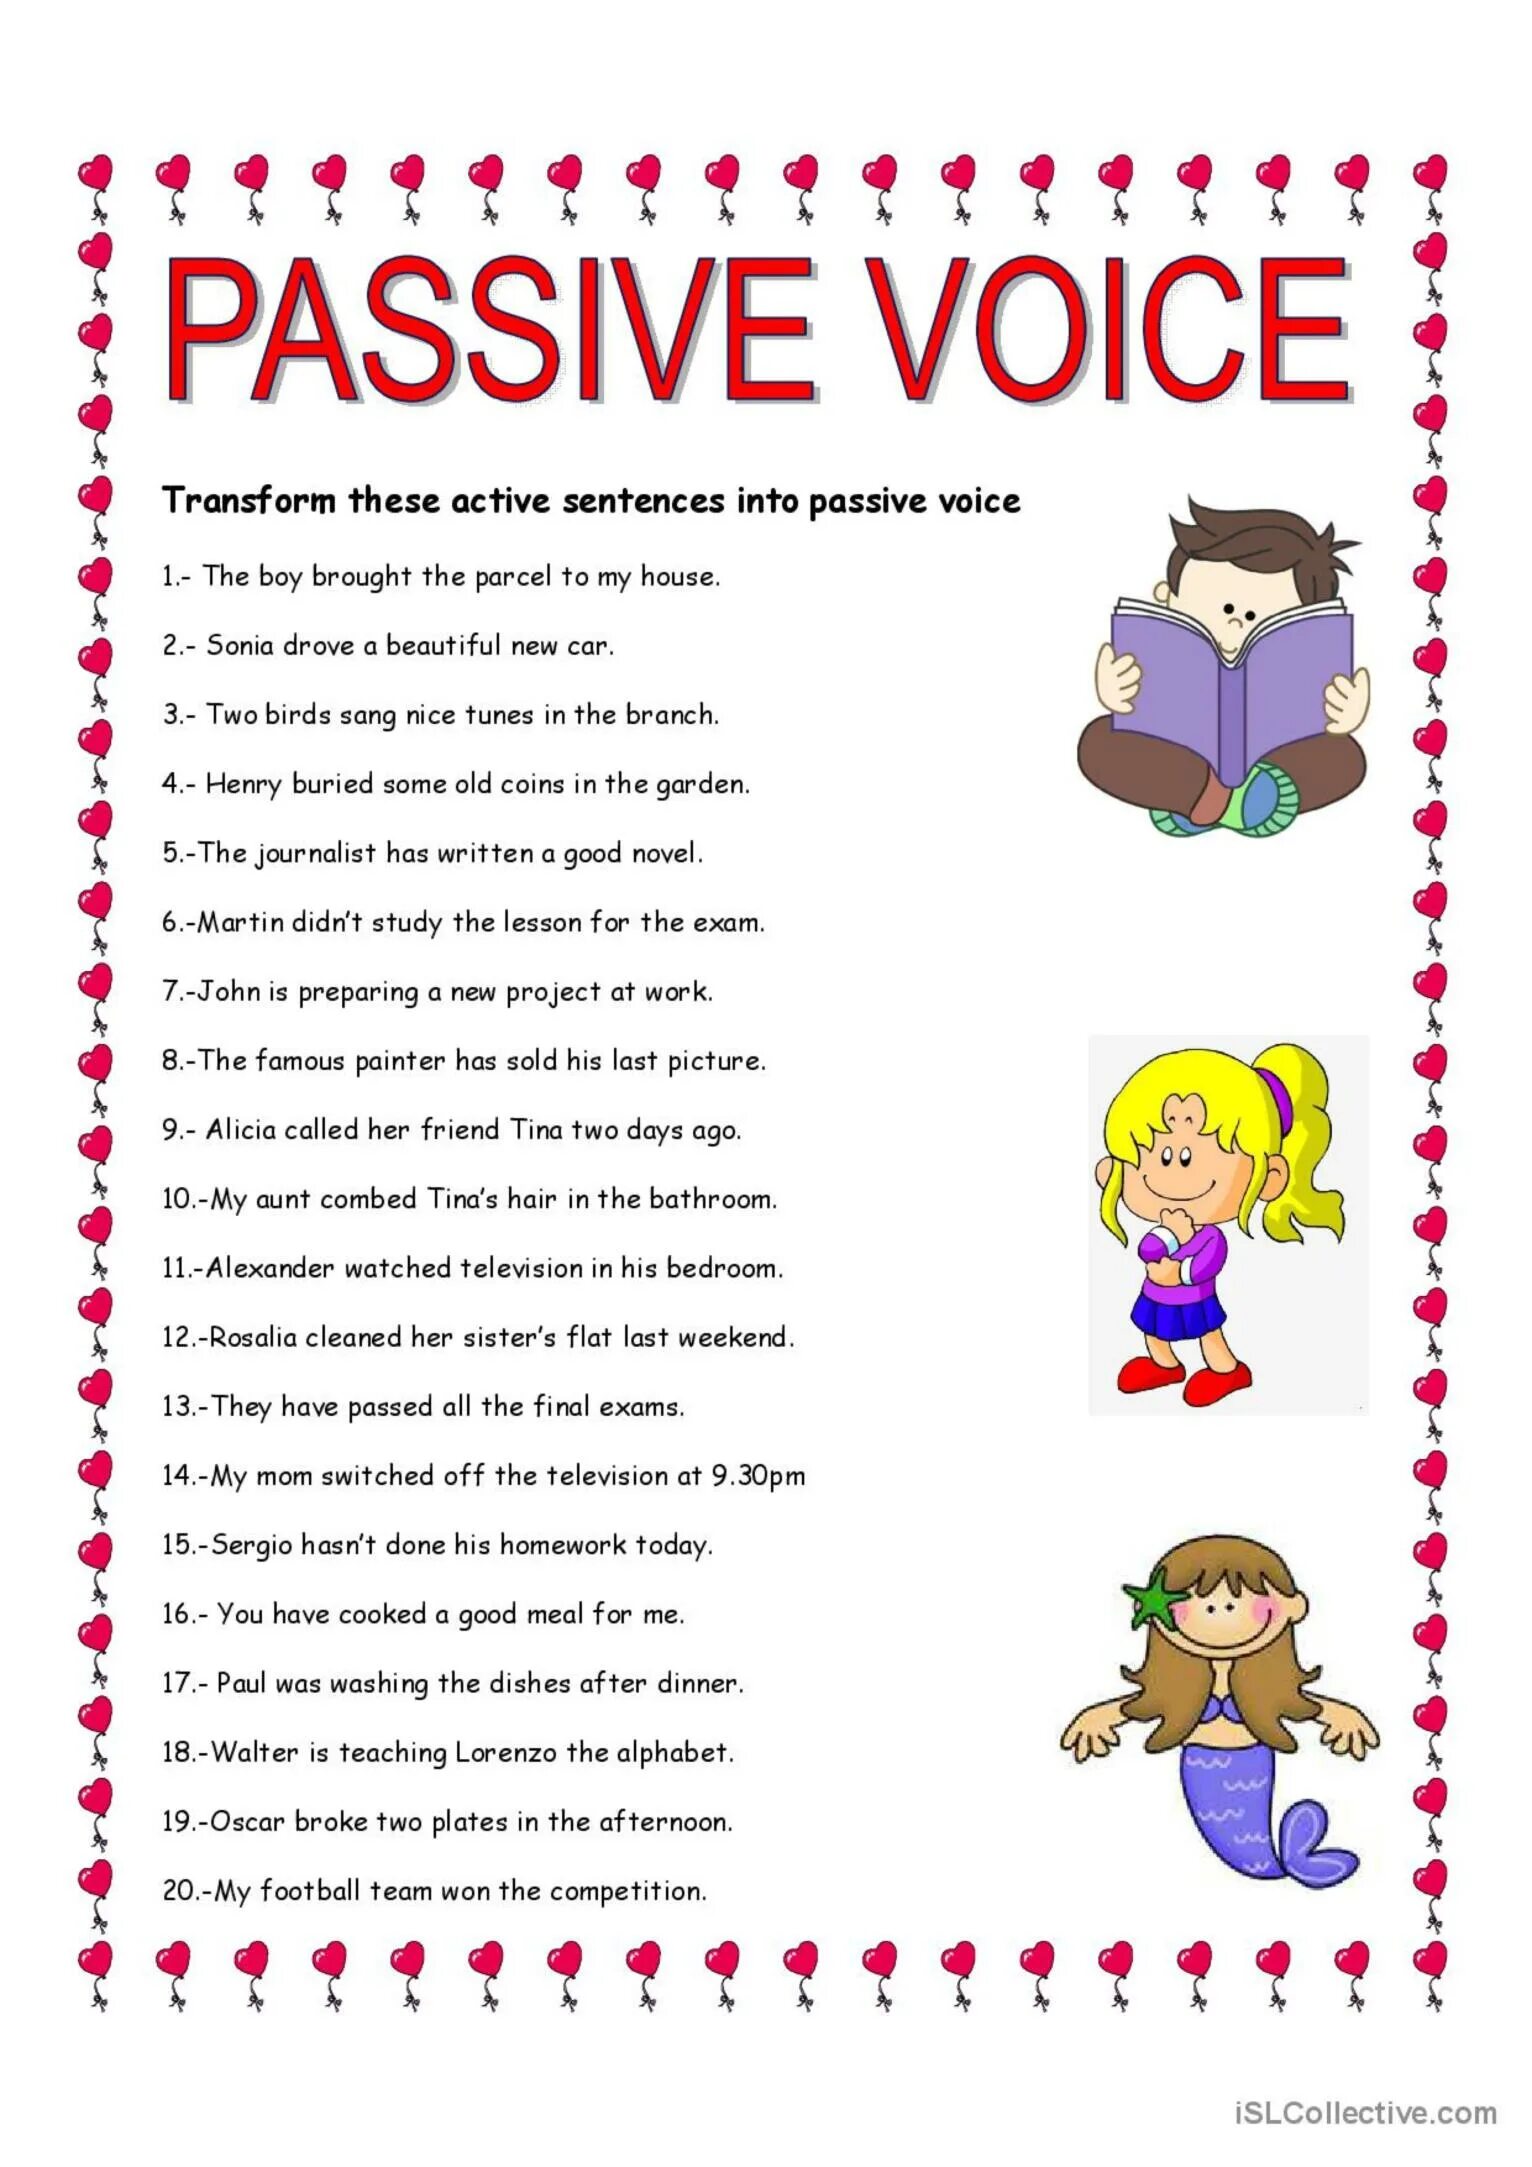 Passive Voice speaking activities for Elementary. Passive Voice games and activities. Passive Voice Sheet activities. Passive Voice questions Worksheets.